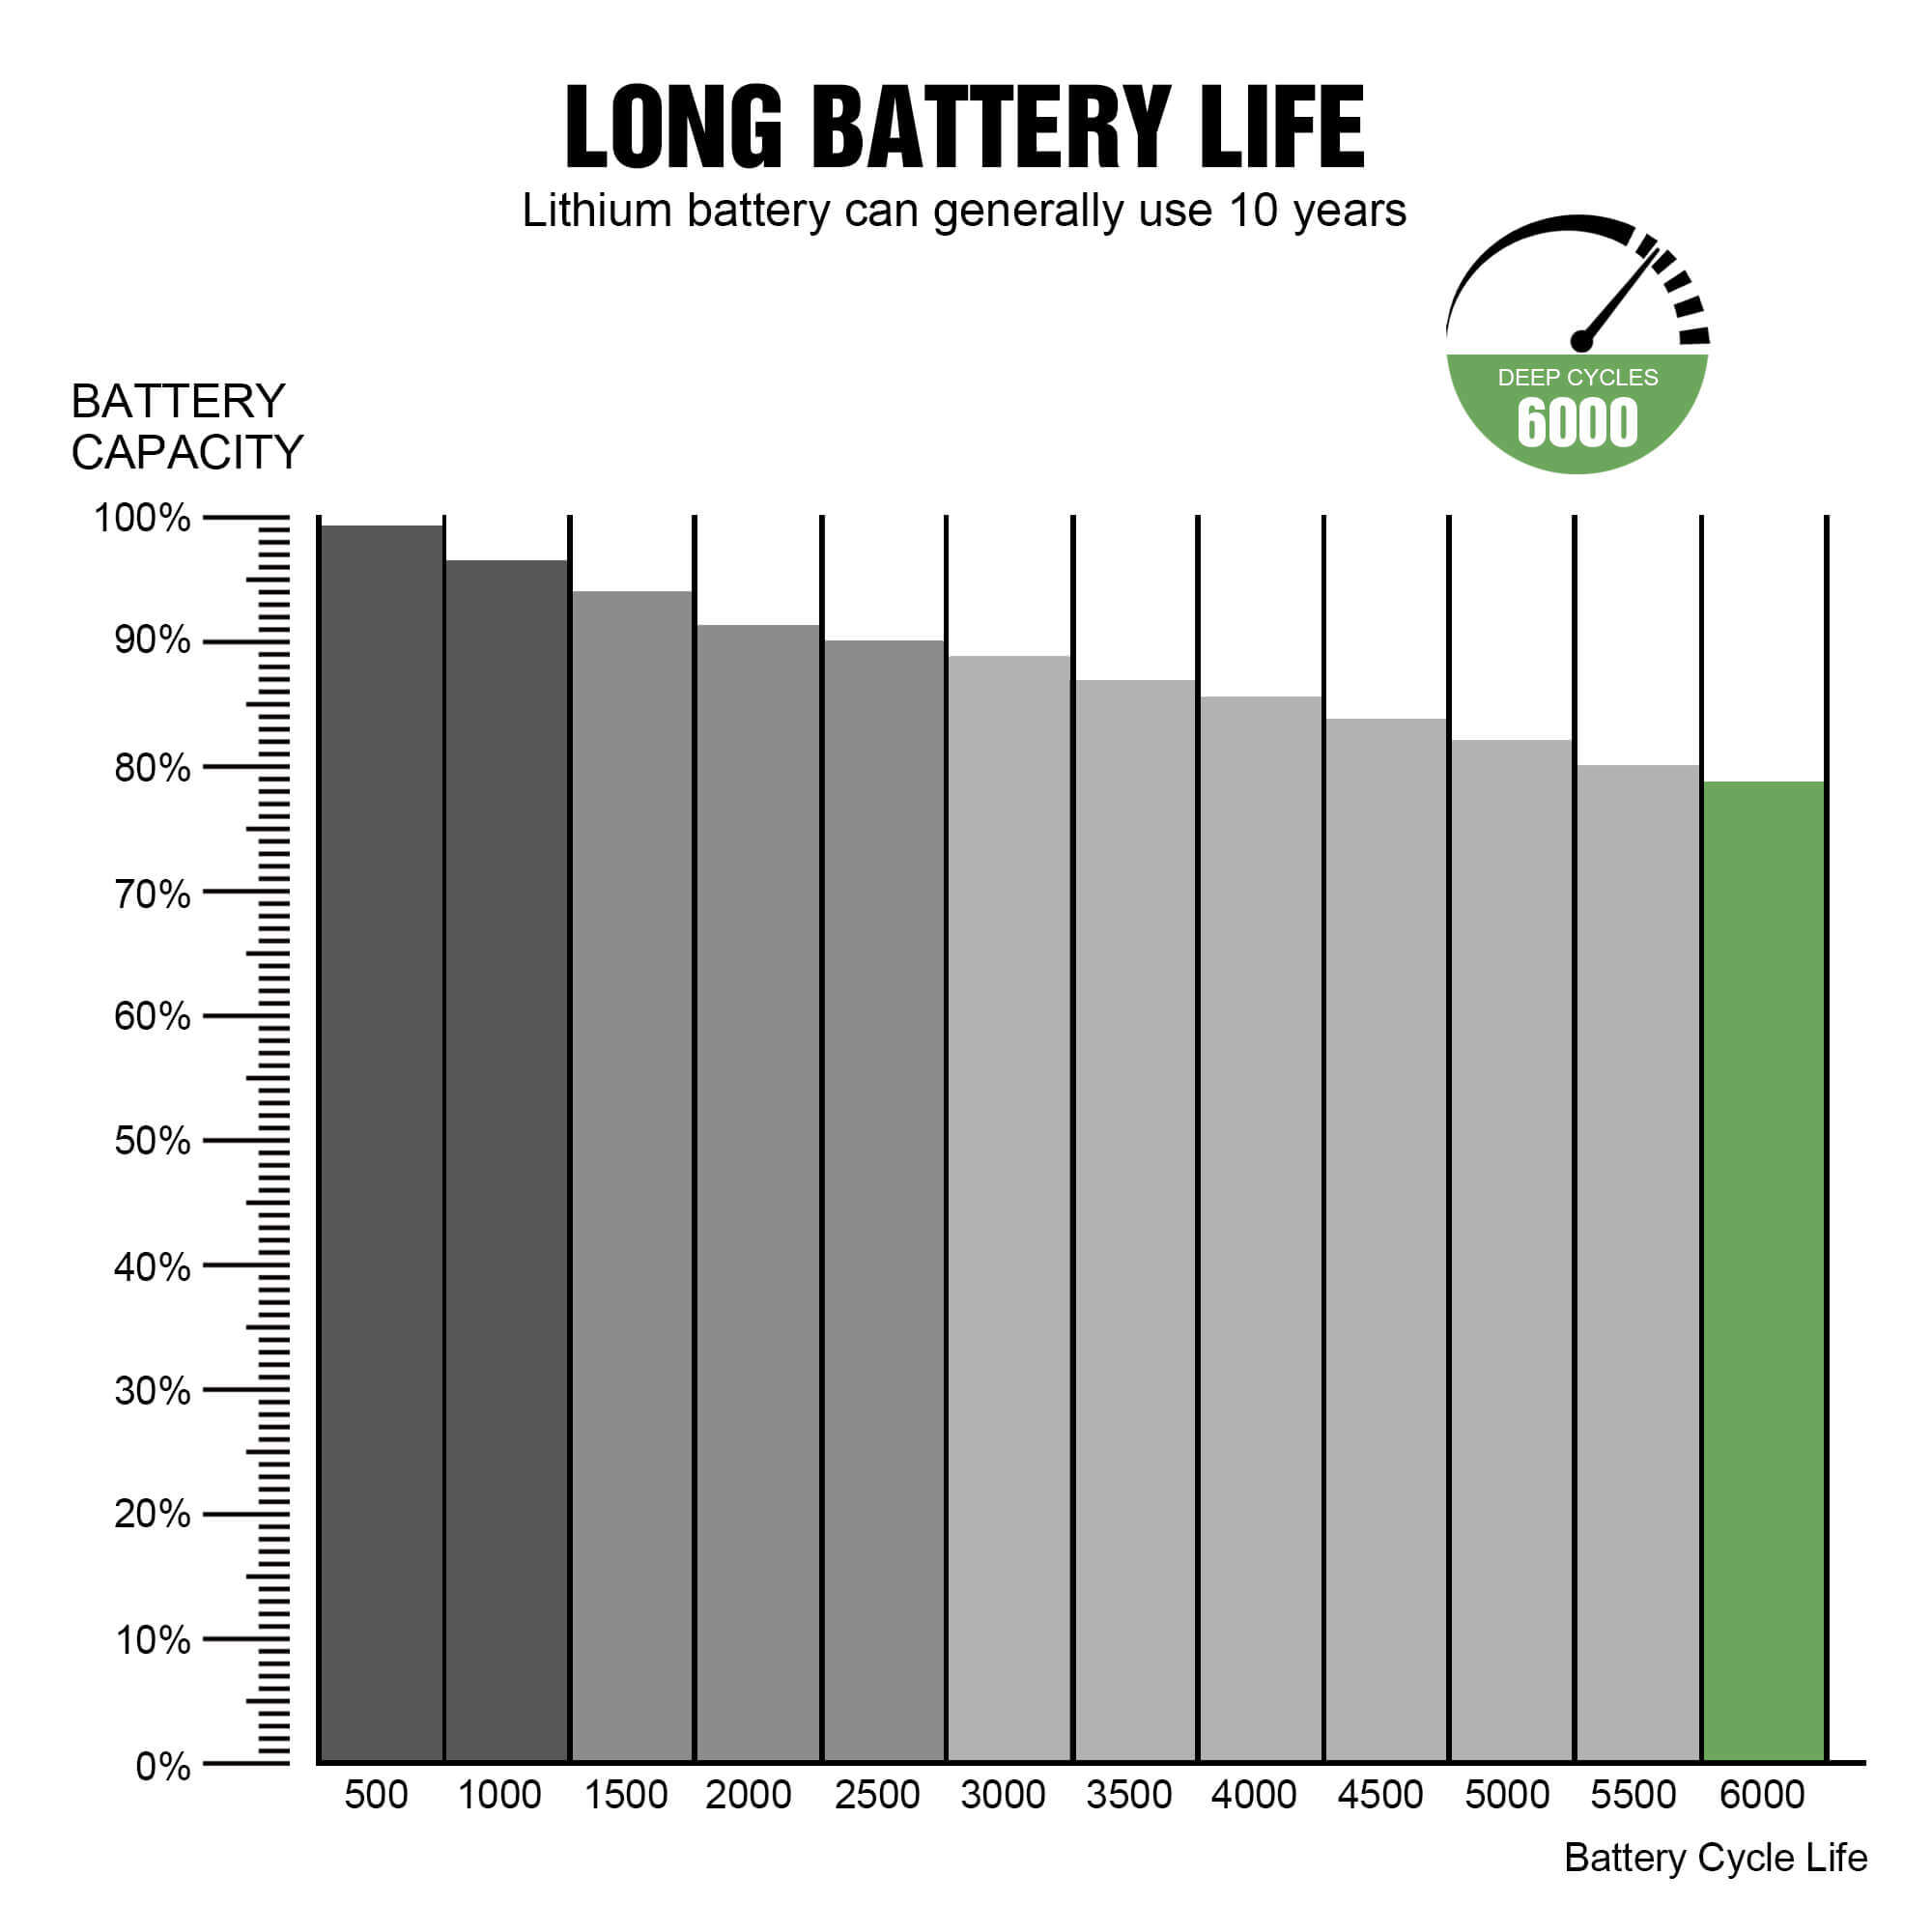 lithium battery pack 12.8v